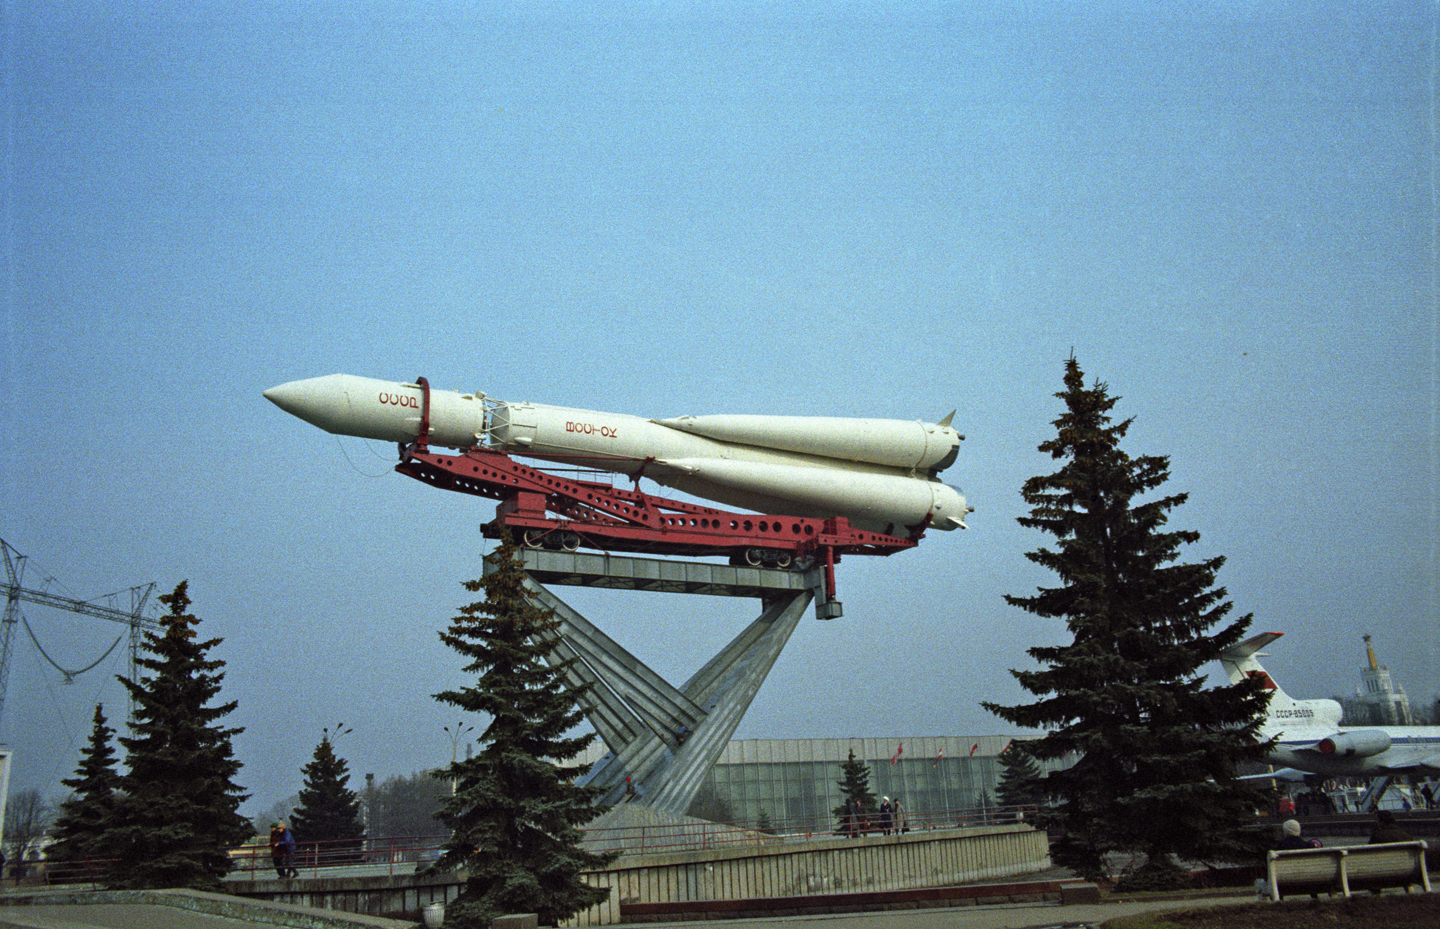 Фото ракеты гагарина. Ракета Юрия Гагарина Восток-1. Ракетоноситель Восток Гагарина. Гагаринская ракета Восток. Ракетоноситель Восток 1 Гагарина.